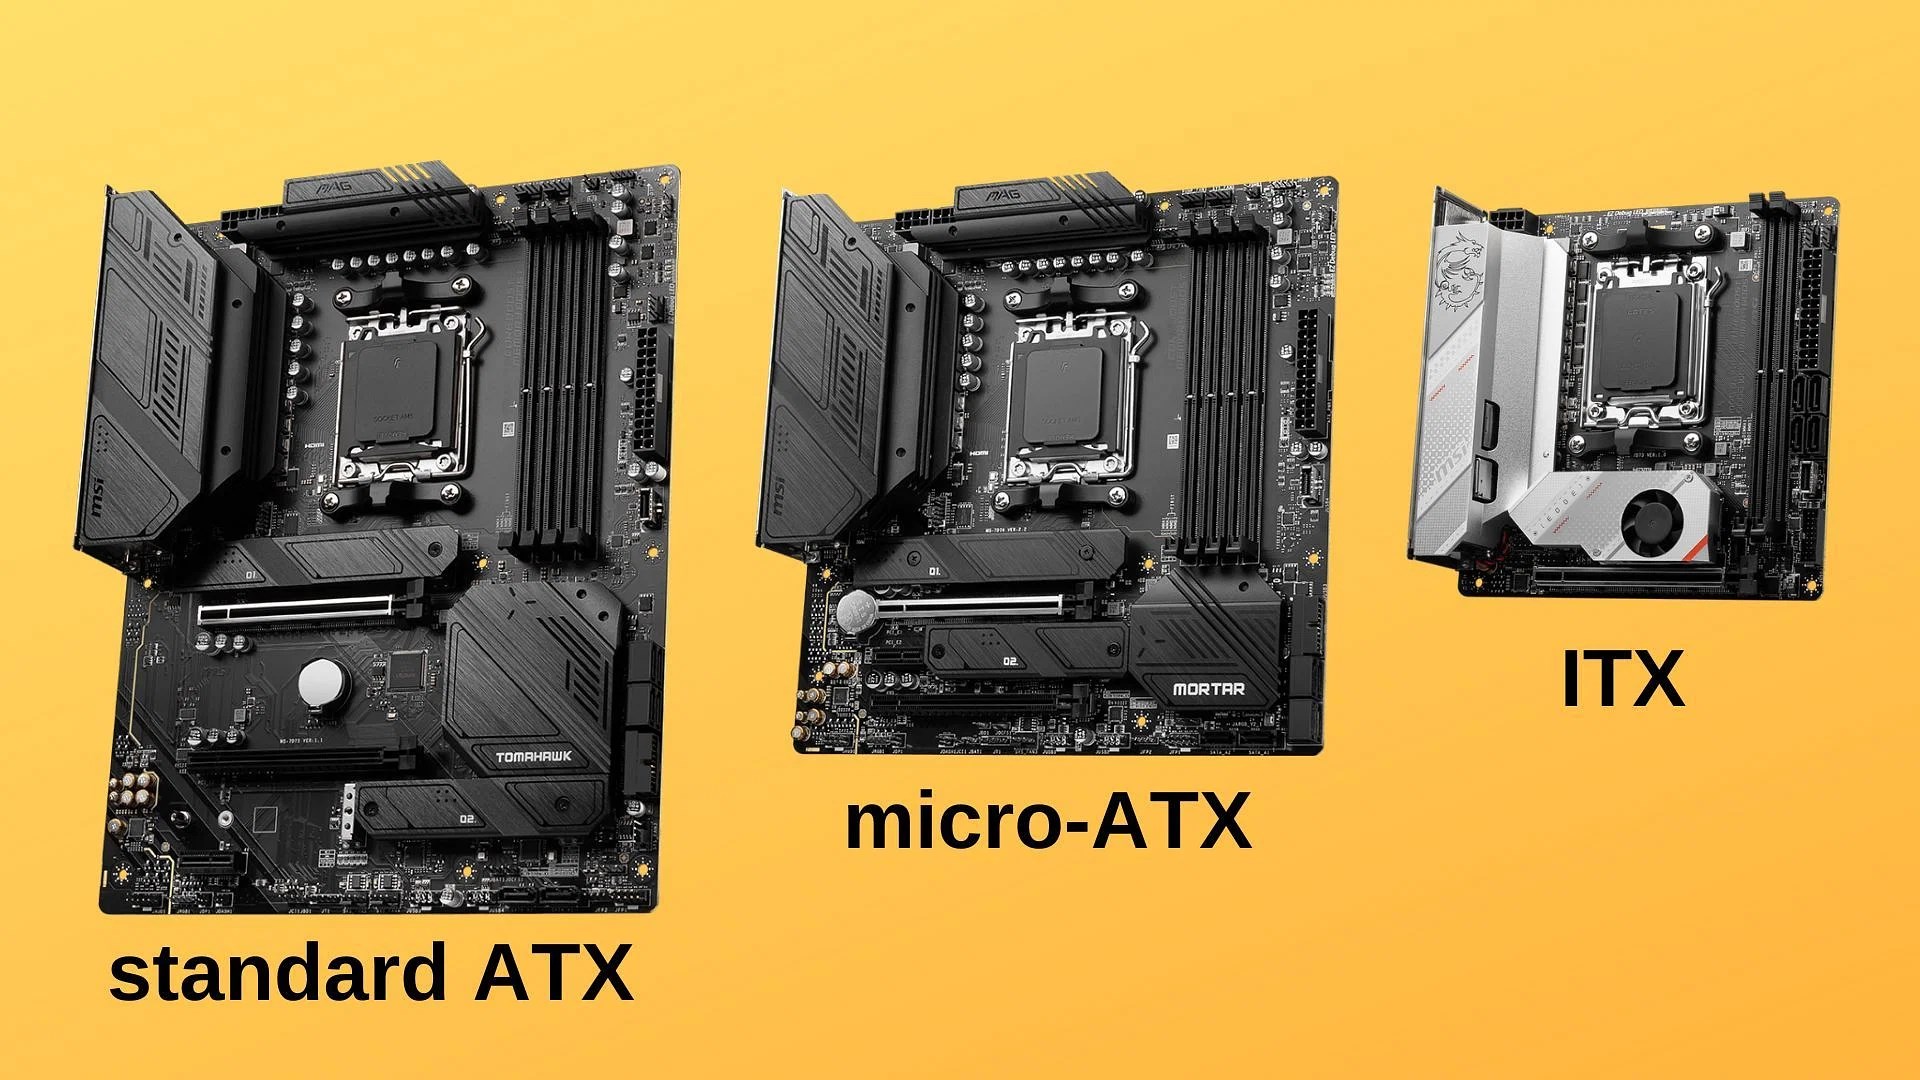 Плата микро атх. ATX vs Micro ATX. Standard ATX материнская плата. Материнская плата Micro ATX. Mini ITX vs ATX.